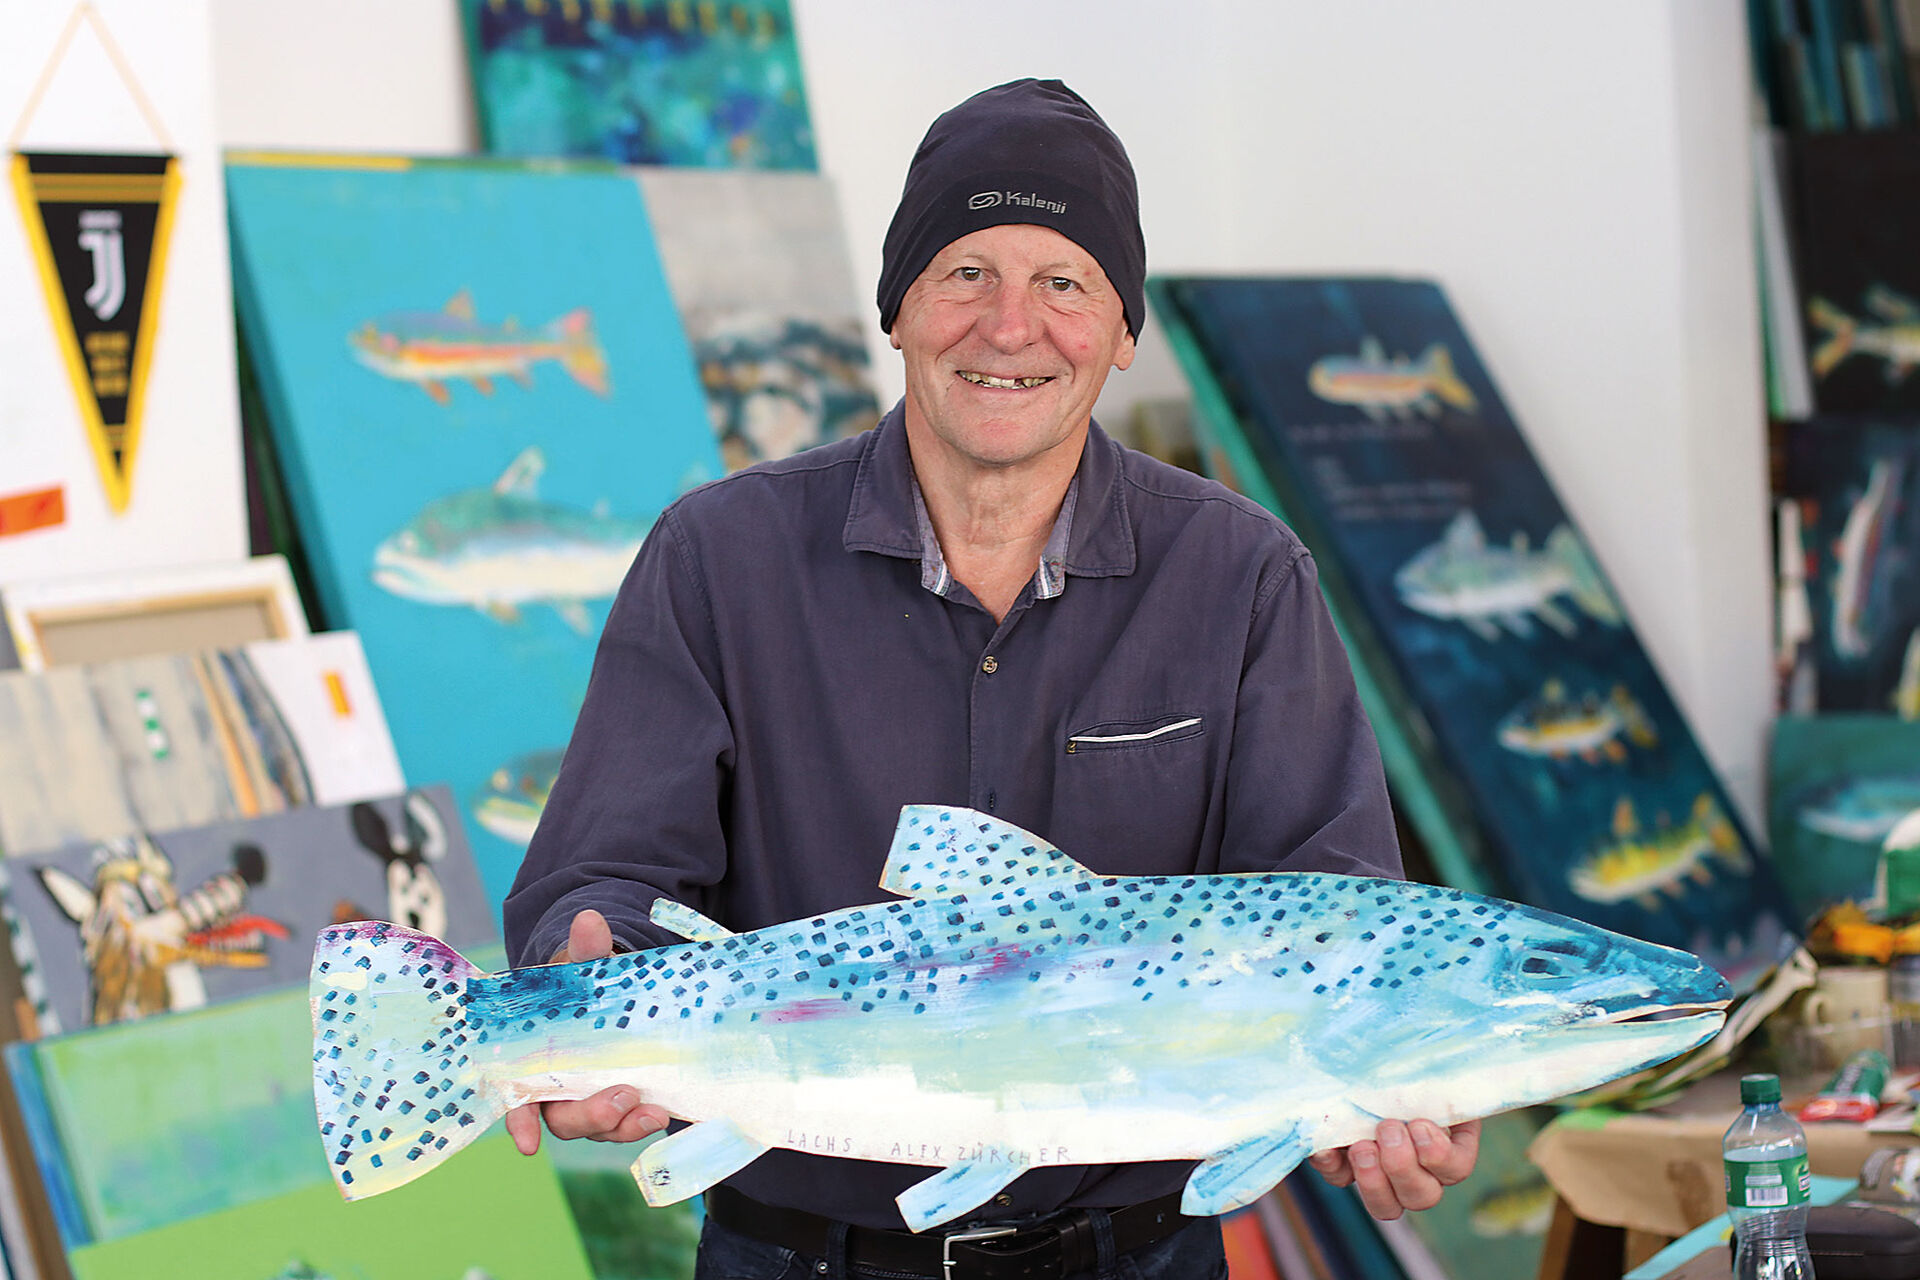  Alex Zürcher arbeitet unermüdlich an seinem Hauptthema Fisch und experimentiert gern mit Material und Formaten.  